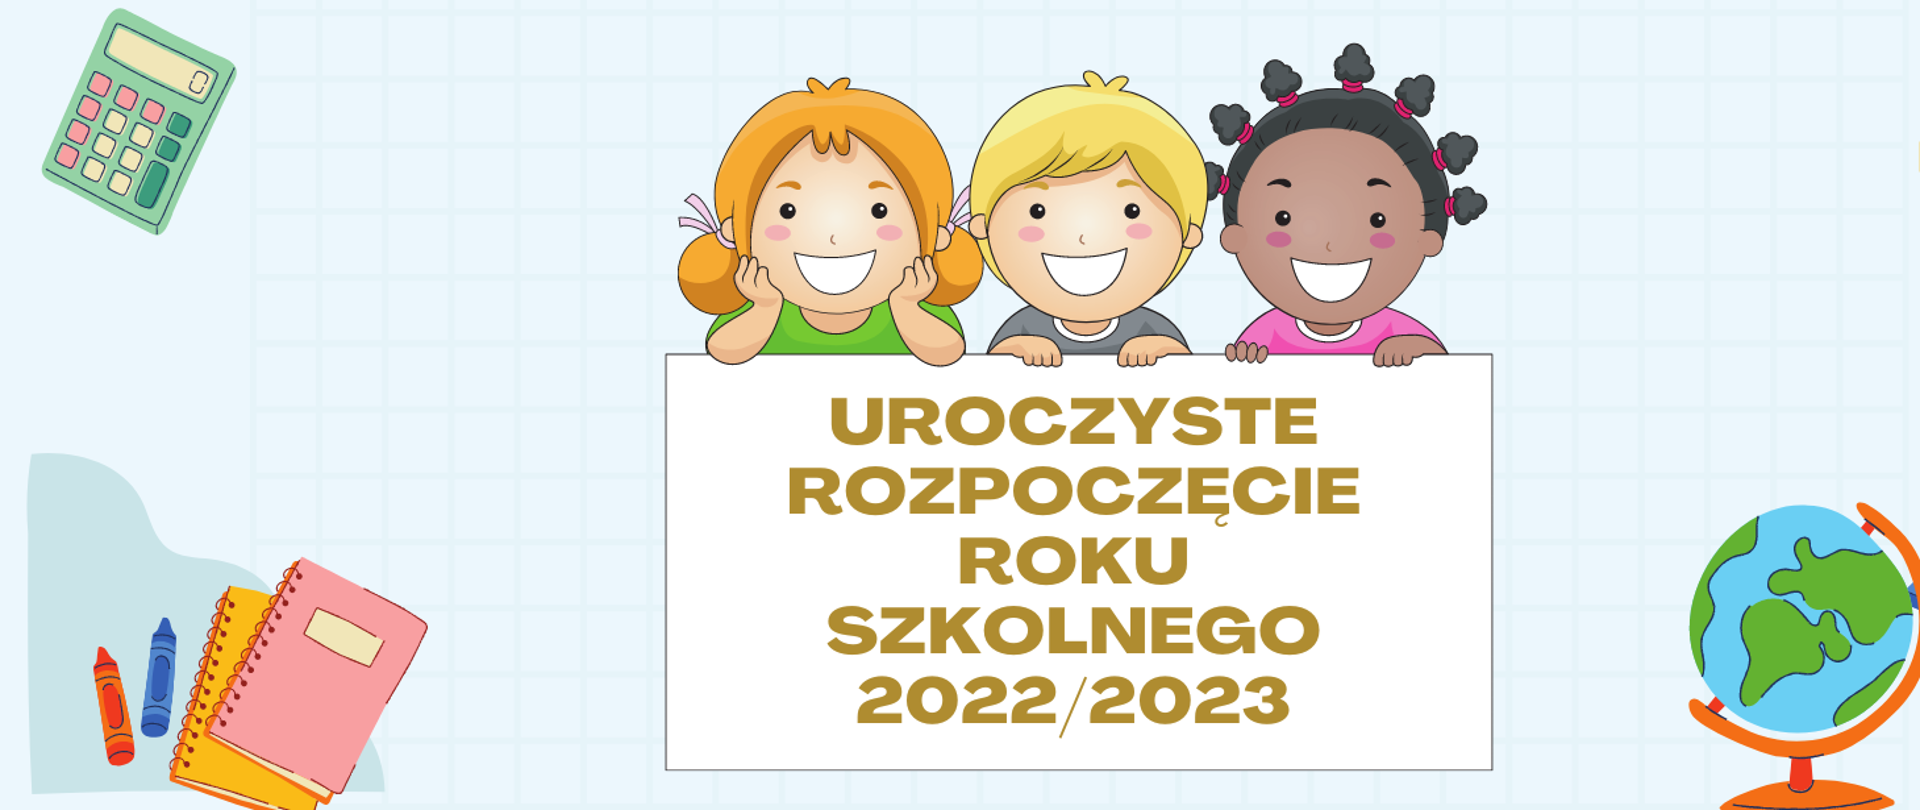 Grafika przedstawiająca na błękitnym pastelowym tle w centralnej części twarze 3 uśmiechniętych dzieci. Od lewej dziewczynka blondynka w zielonej bluzce, obok chłopiec – blondyn w szarej bluzce, trzecia postać to ciemnoskóra dziewczynka z czarnymi włosami i różową bluzką. Pod grafikami dzieci prostokąt biały na jego tle tekst: UROCZYSTE ROZPOCZĘCIE ROKU SZKOLNEGO 2022/2023. W lewym górnym rogu grafika zielonego kalkulatora, w lewym dolnym rogu dwie kredki świecowe – czerwona i niebieska oraz dwa kołonotatniki w kolorach: żółty, różowy. W prawym górny rogu grafiki: zielona linijka i żółty kątomierz, w prawy dolnym rogu globus, niebieski laptop i dwa drewniane ołówki z gumką.